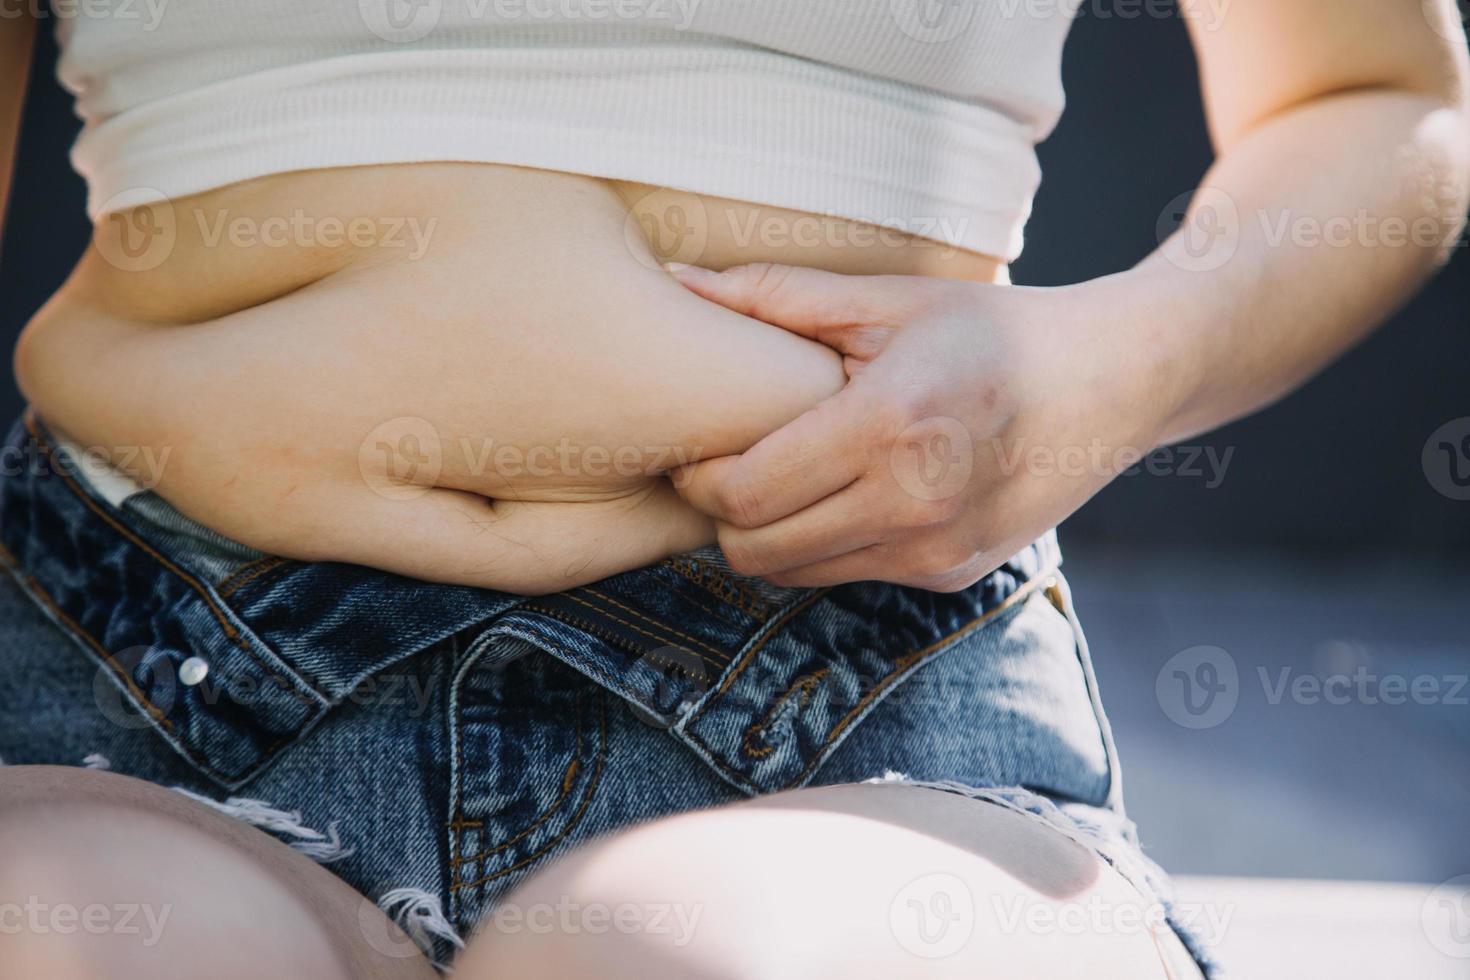 fett kvinna, fett mage, knubbig, fet kvinna hand innehav överdriven mage fett med mäta tejp, kvinna diet livsstil begrepp foto